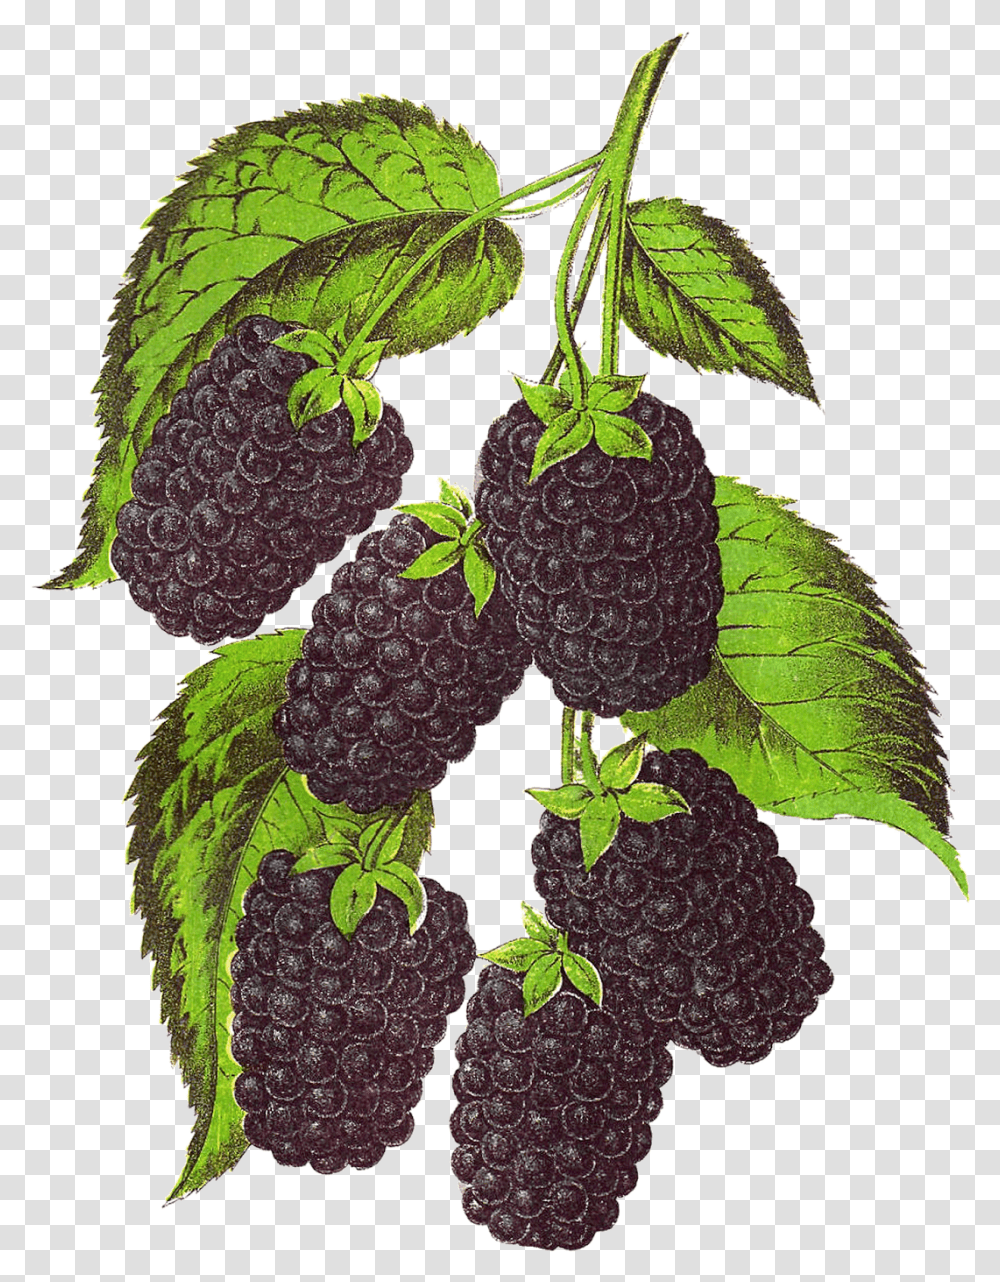 Blackberry Fruit Background Blackberry Illustration, Plant, Food, Leaf, Grapes Transparent Png